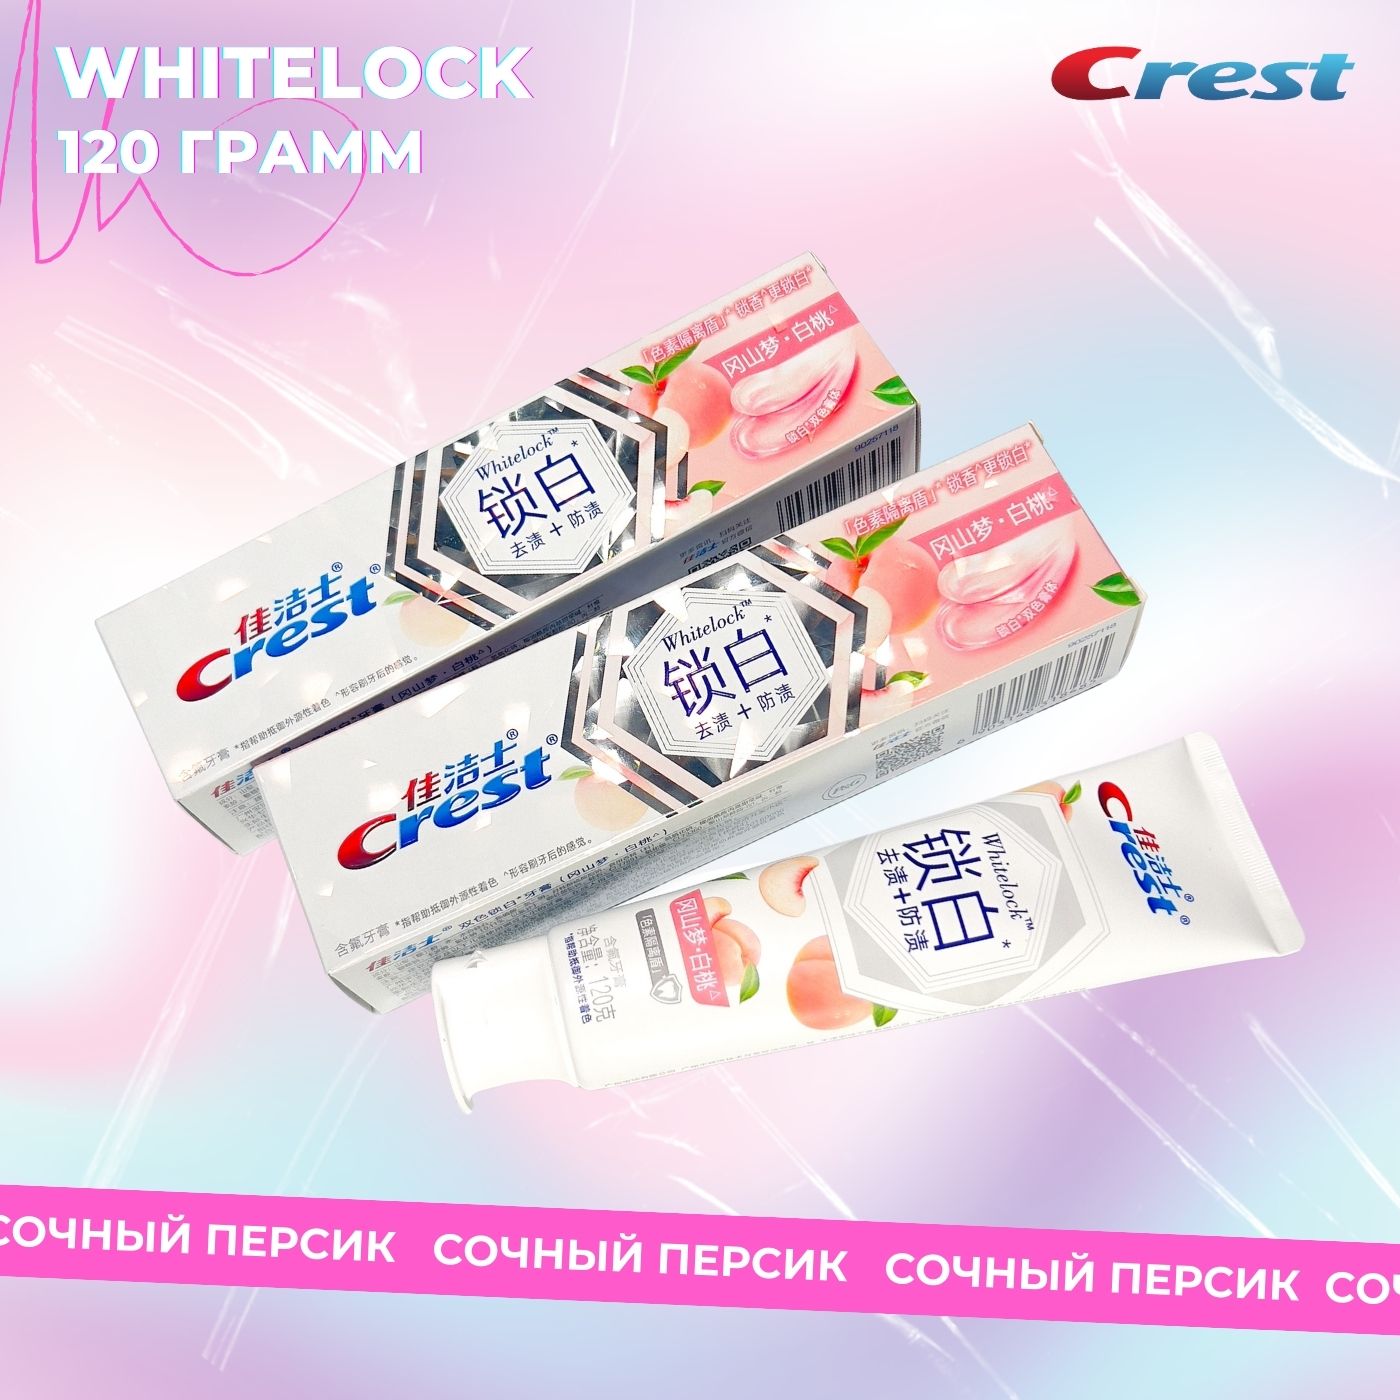 Зубная паста Crest Whitelock профессиональная отбеливающая белый персик 120г white glo зубная паста профессиональный выбор отбеливающая